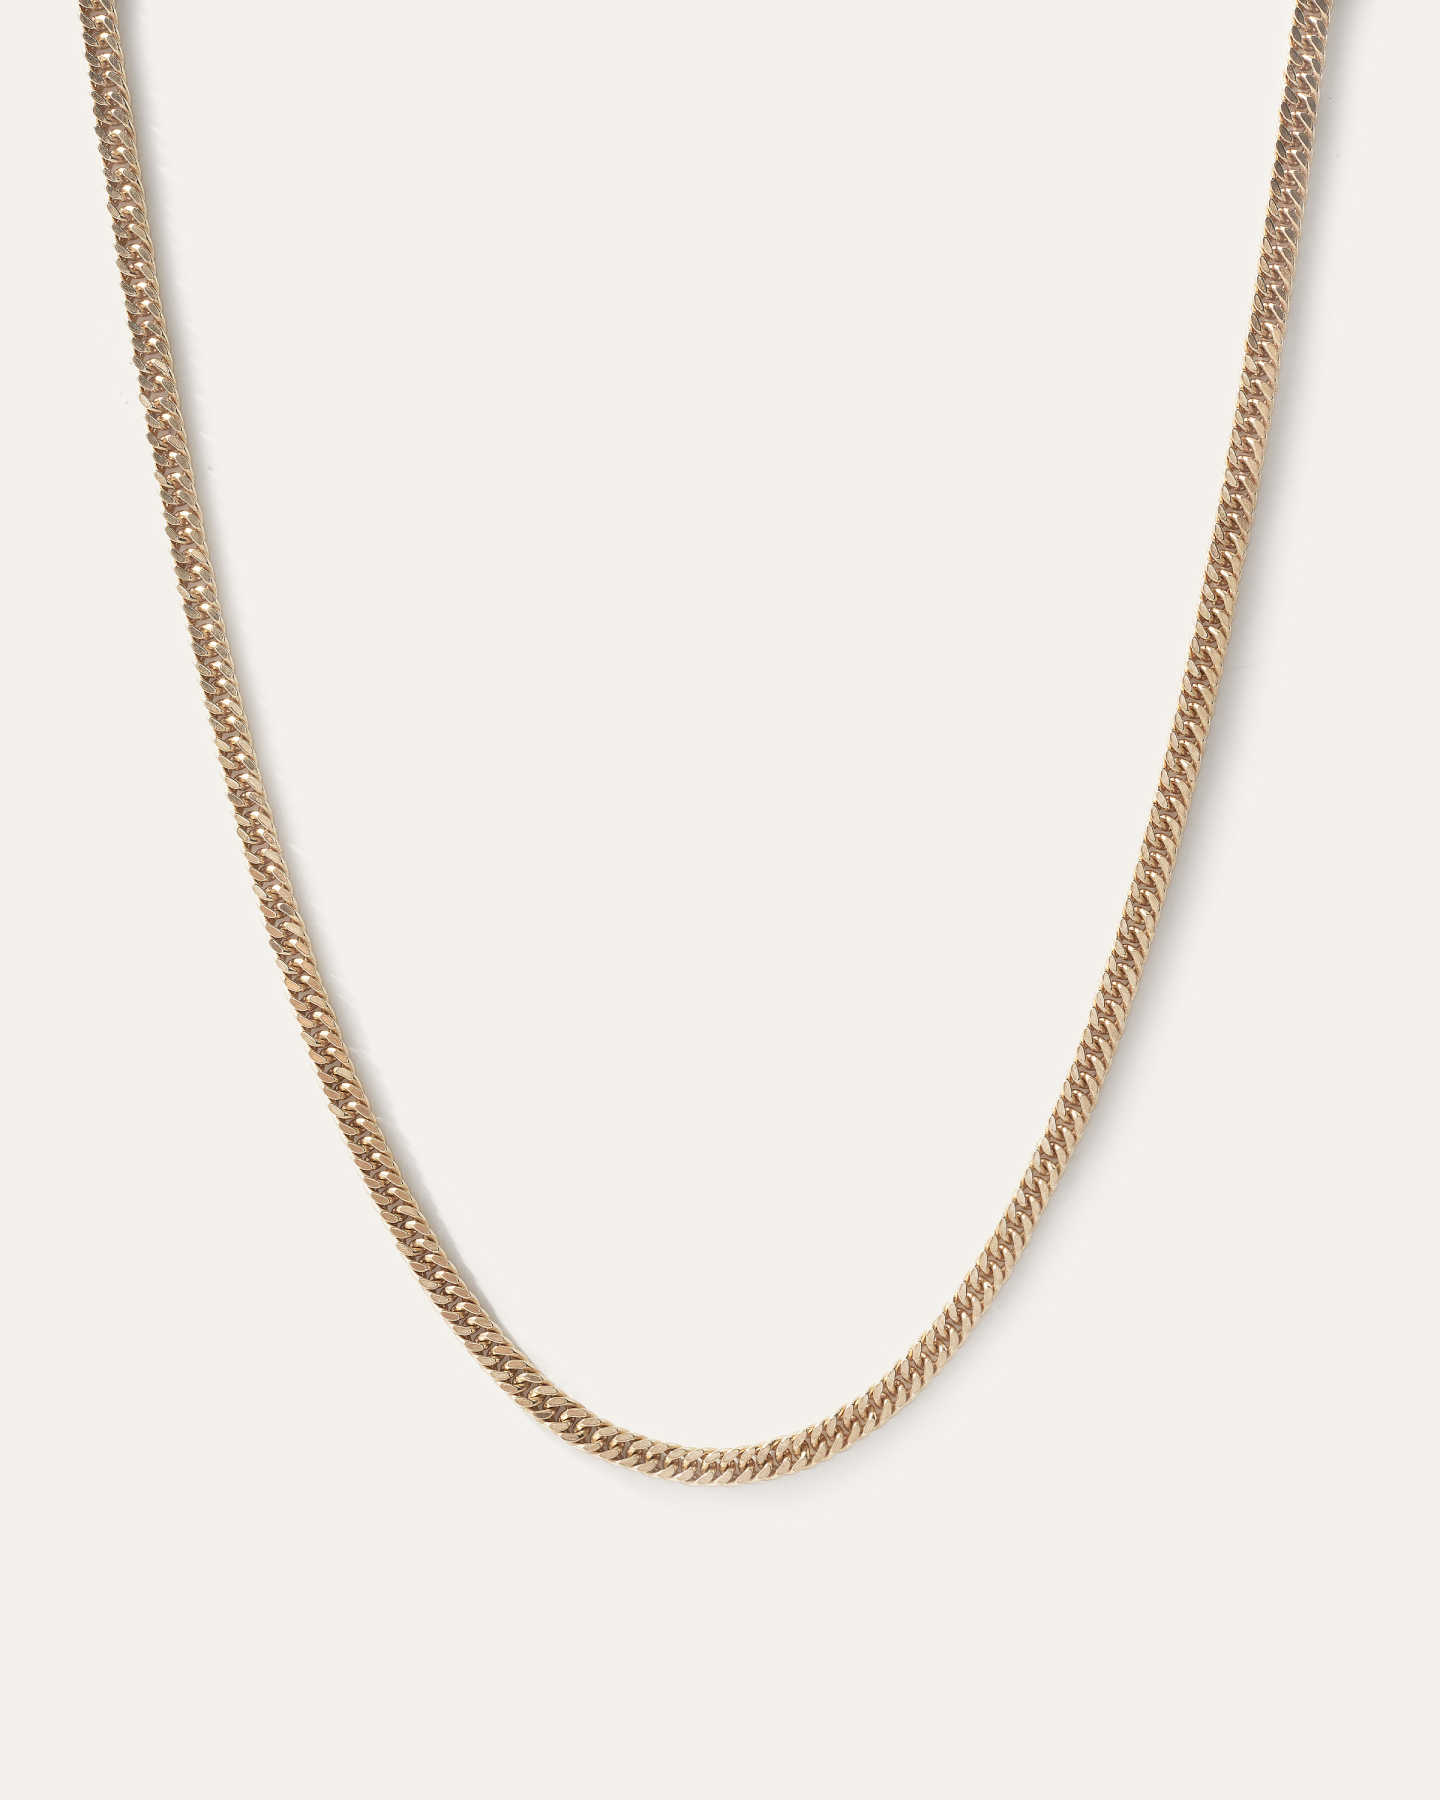 Double Curb Chain Necklace - Gold Vermeil - 0